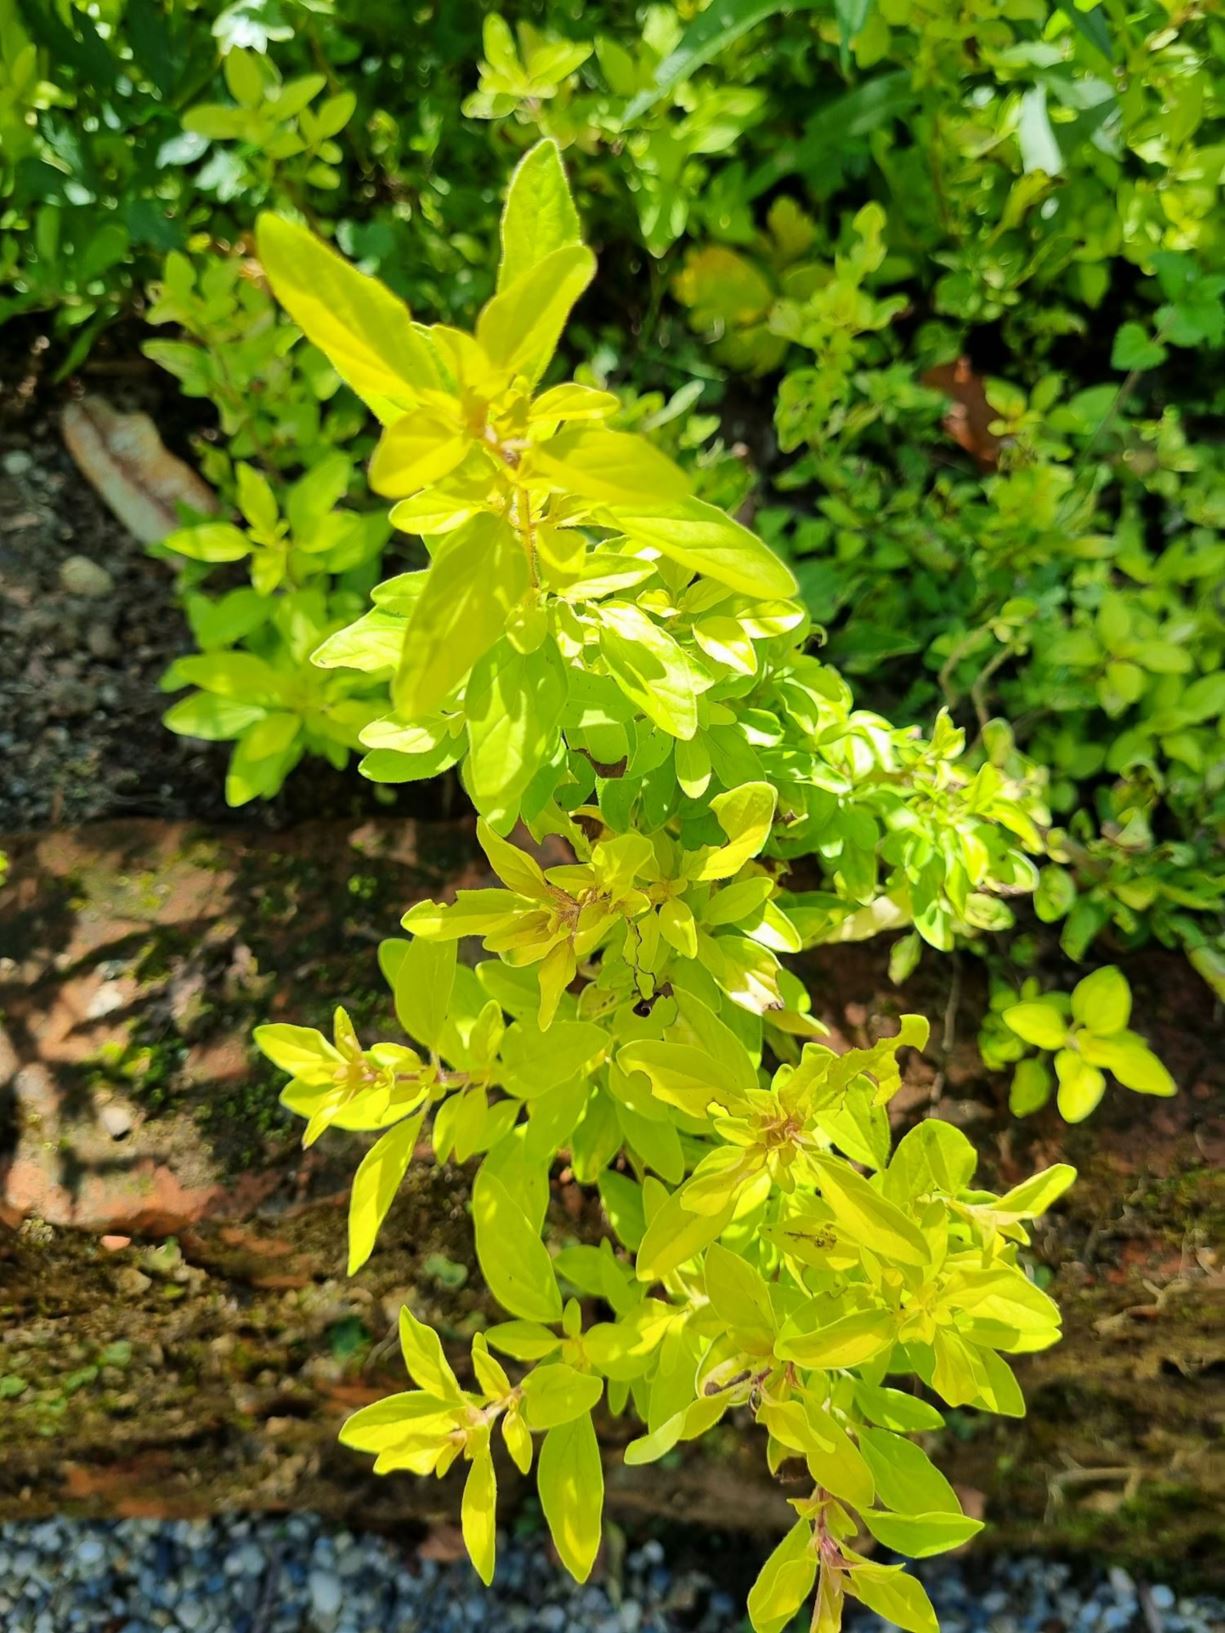 Origanum vulgare 'Aureum' - Golden marjoram